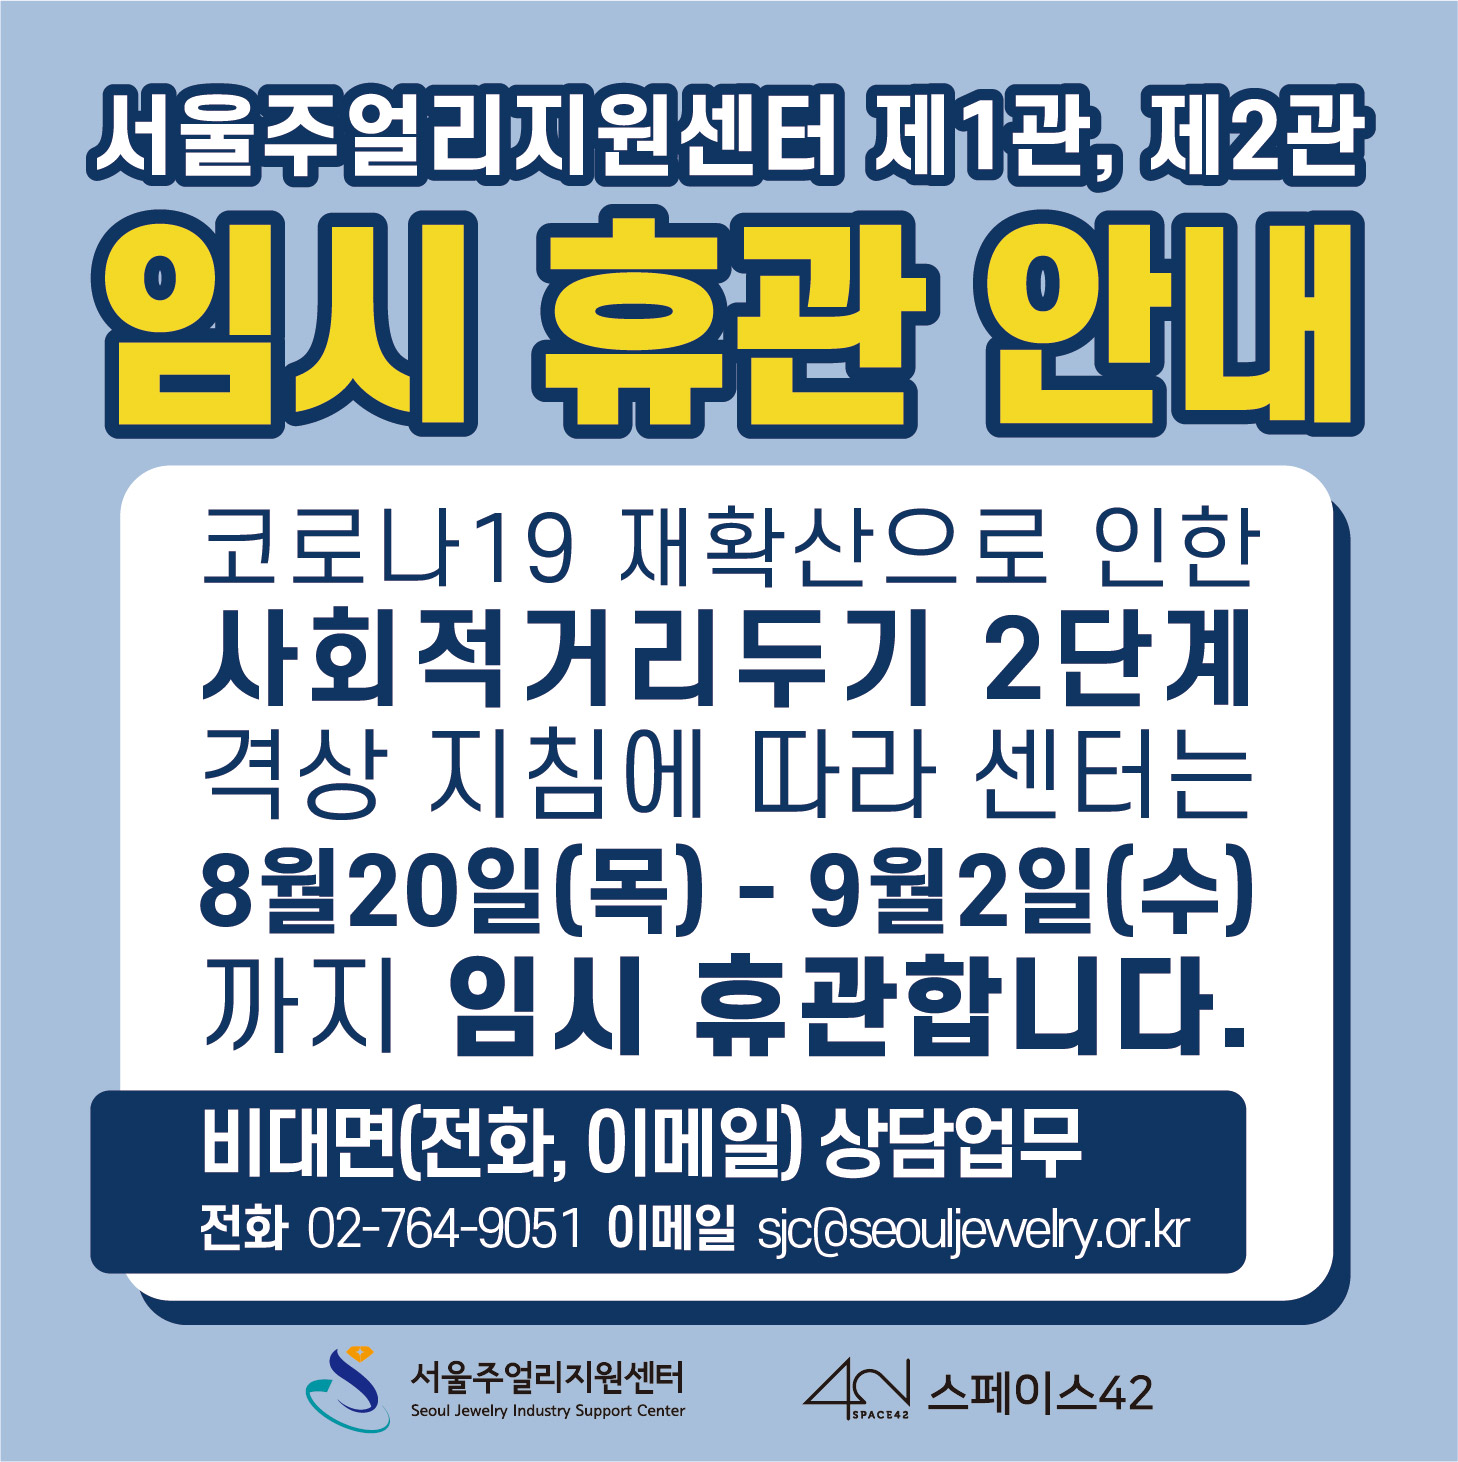 서울주얼리지원센터 제1관, 제2관 임시 휴관 안내​